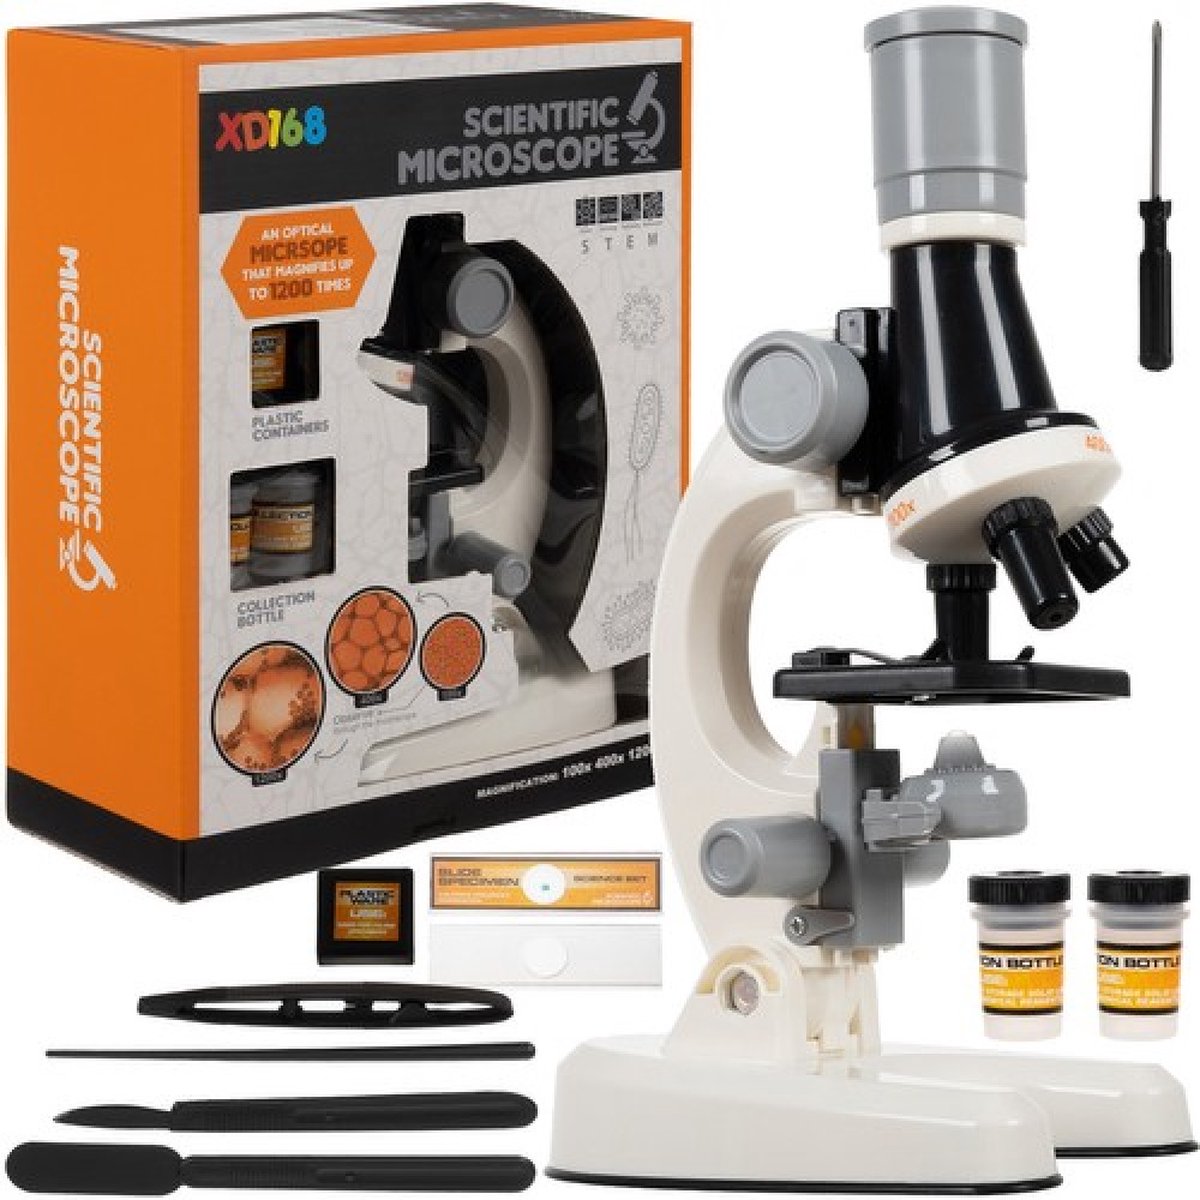 Speelgoed Microscoop met accessoires - Inclusief 12 Extra Preparaten - Tot X1200 - Educatief - Microscope - Jongen en meisje - kinderen - 3 jaar - Gift - Cadeau